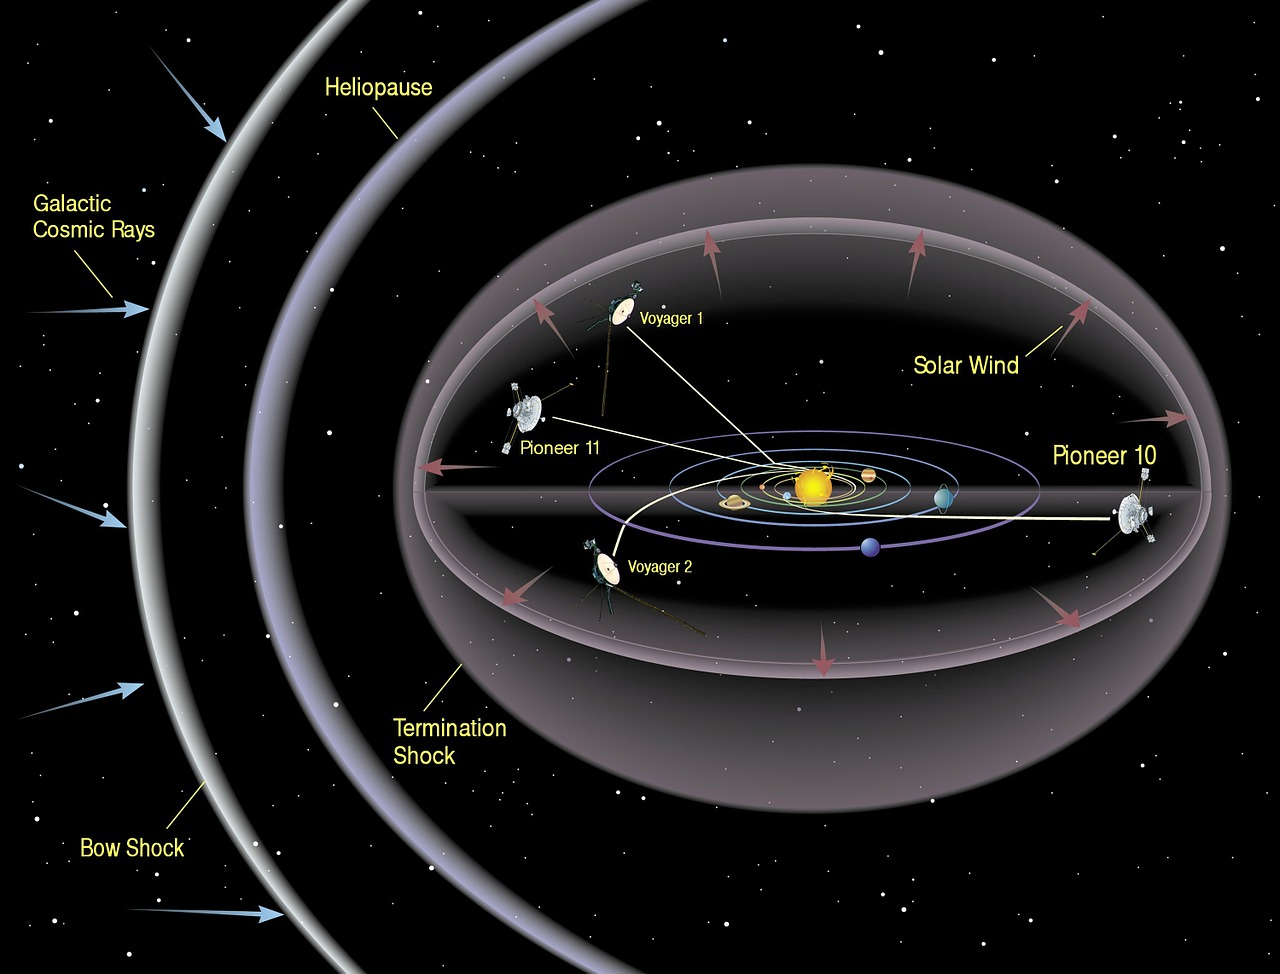 ¿Qué ha sido de la Voyager 1? Descubramos su destino